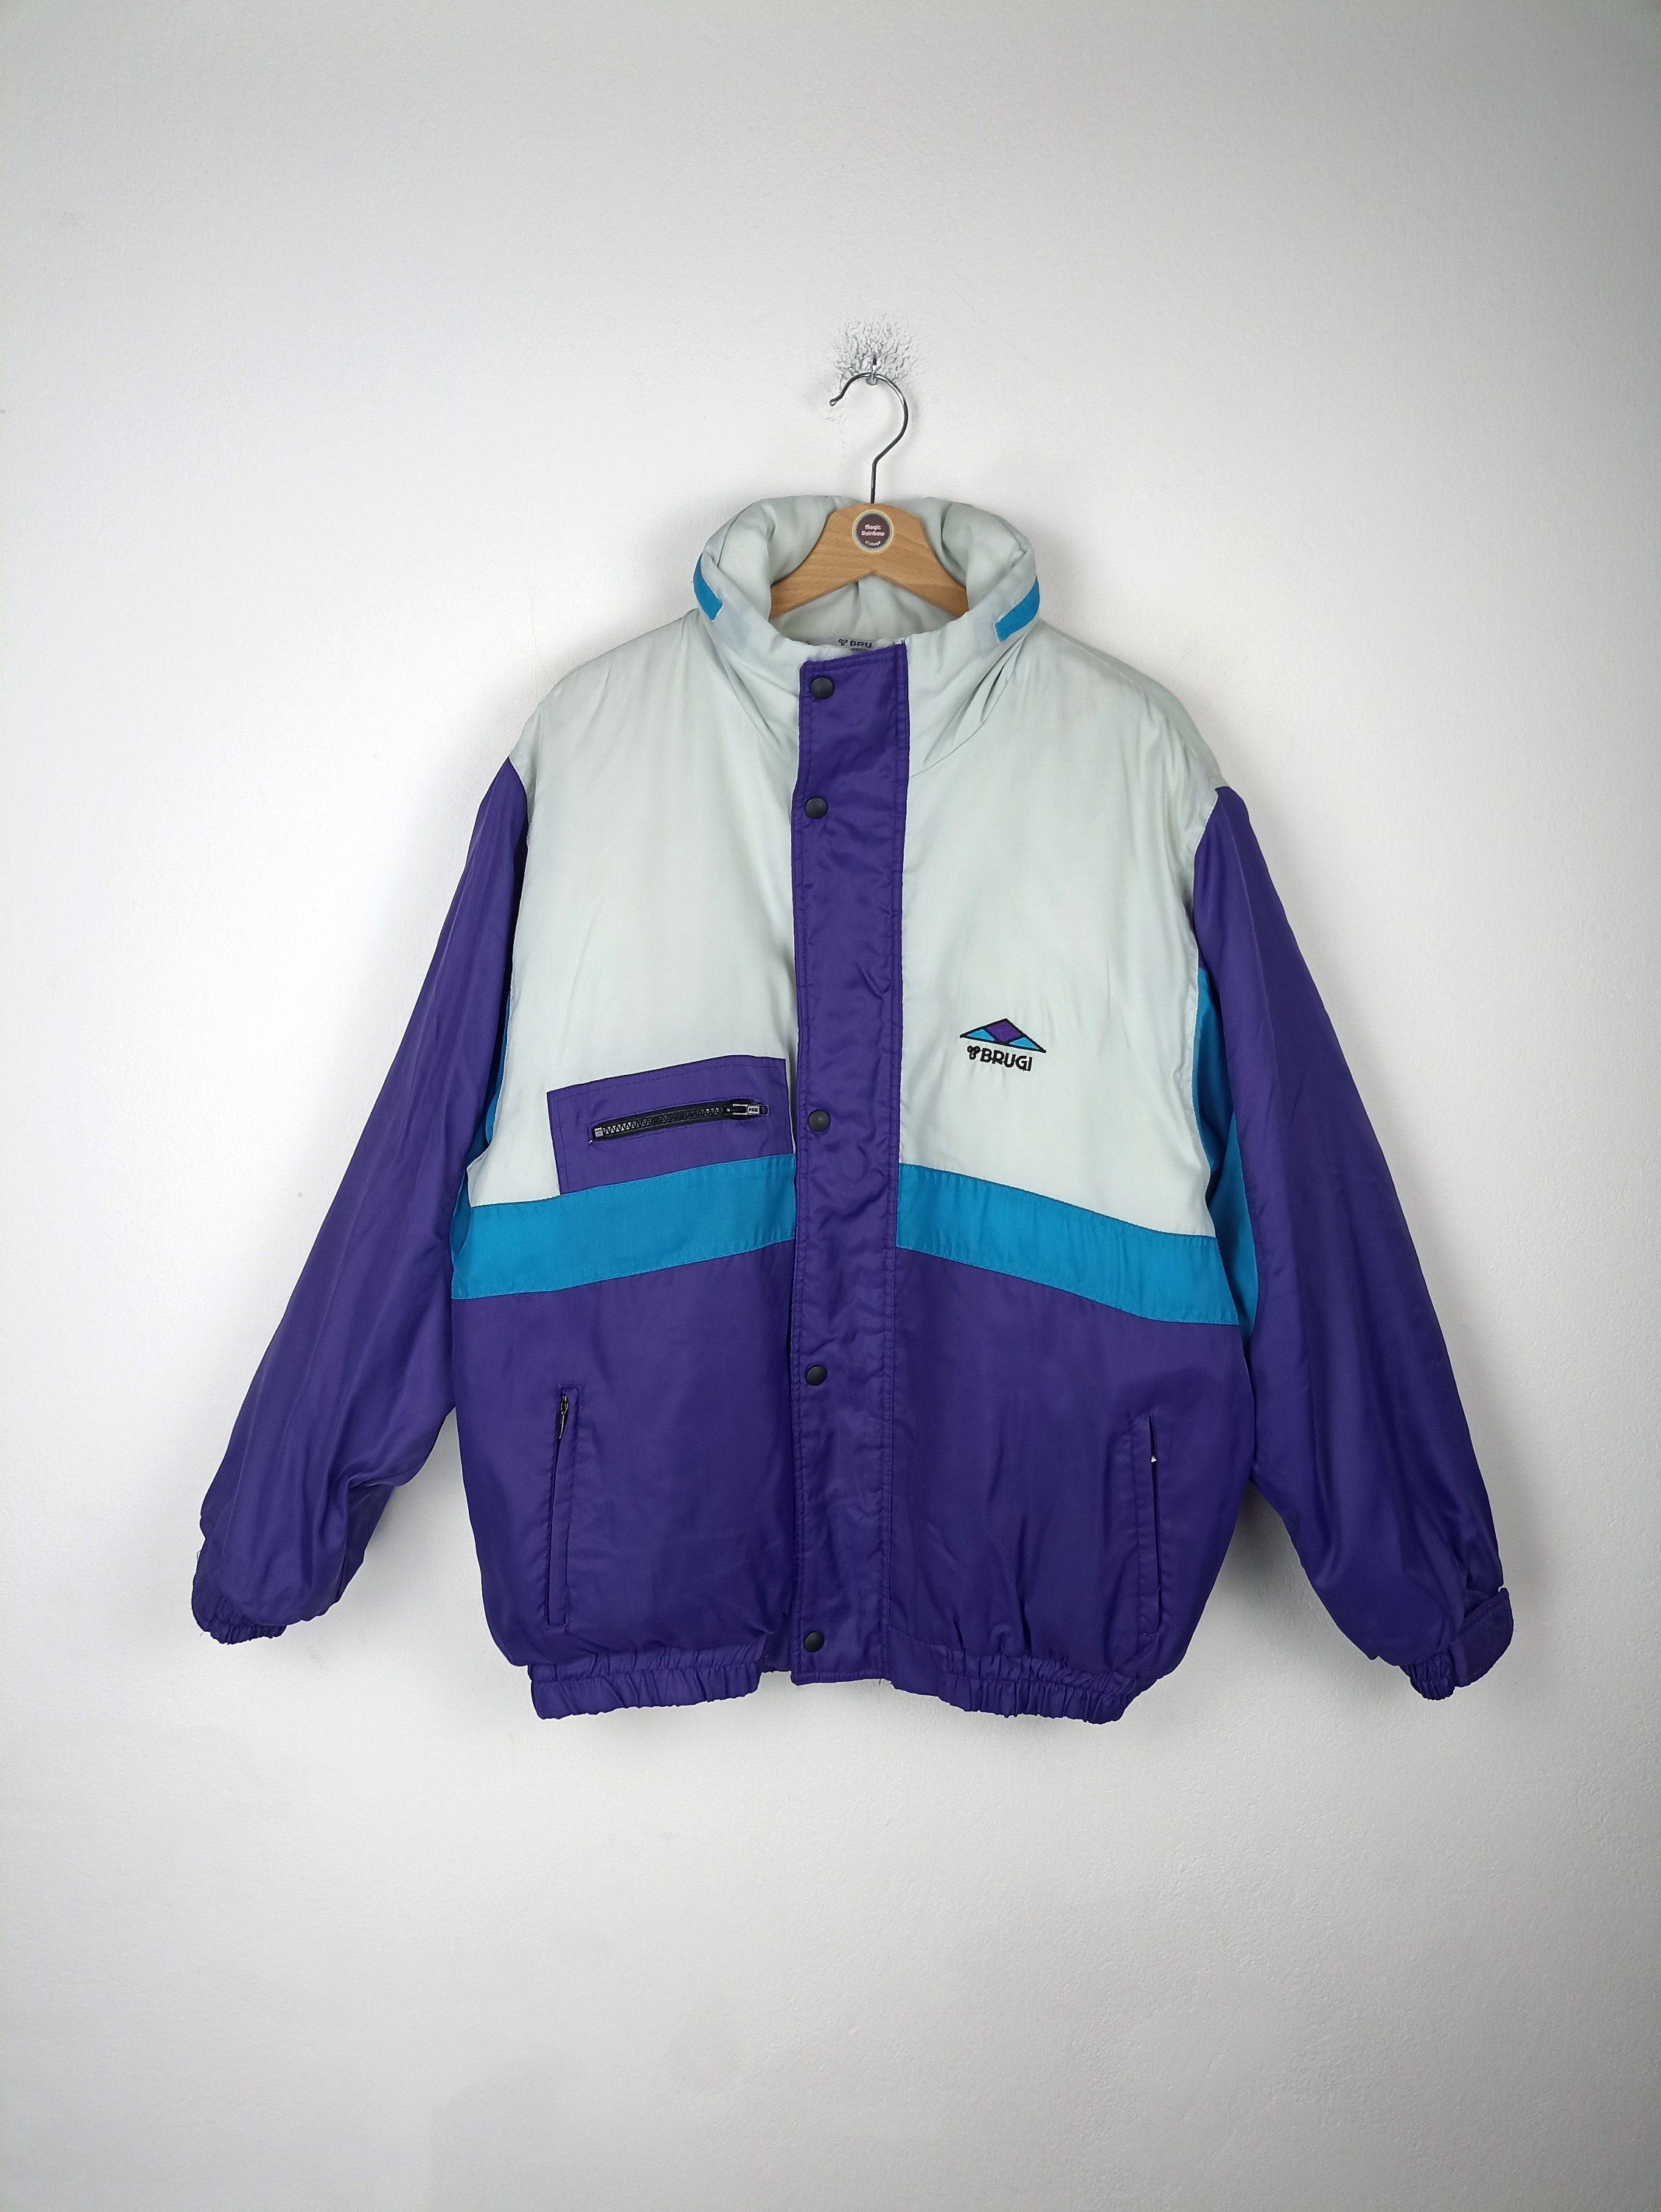 90s Snowboard Jacket - Etsy UK